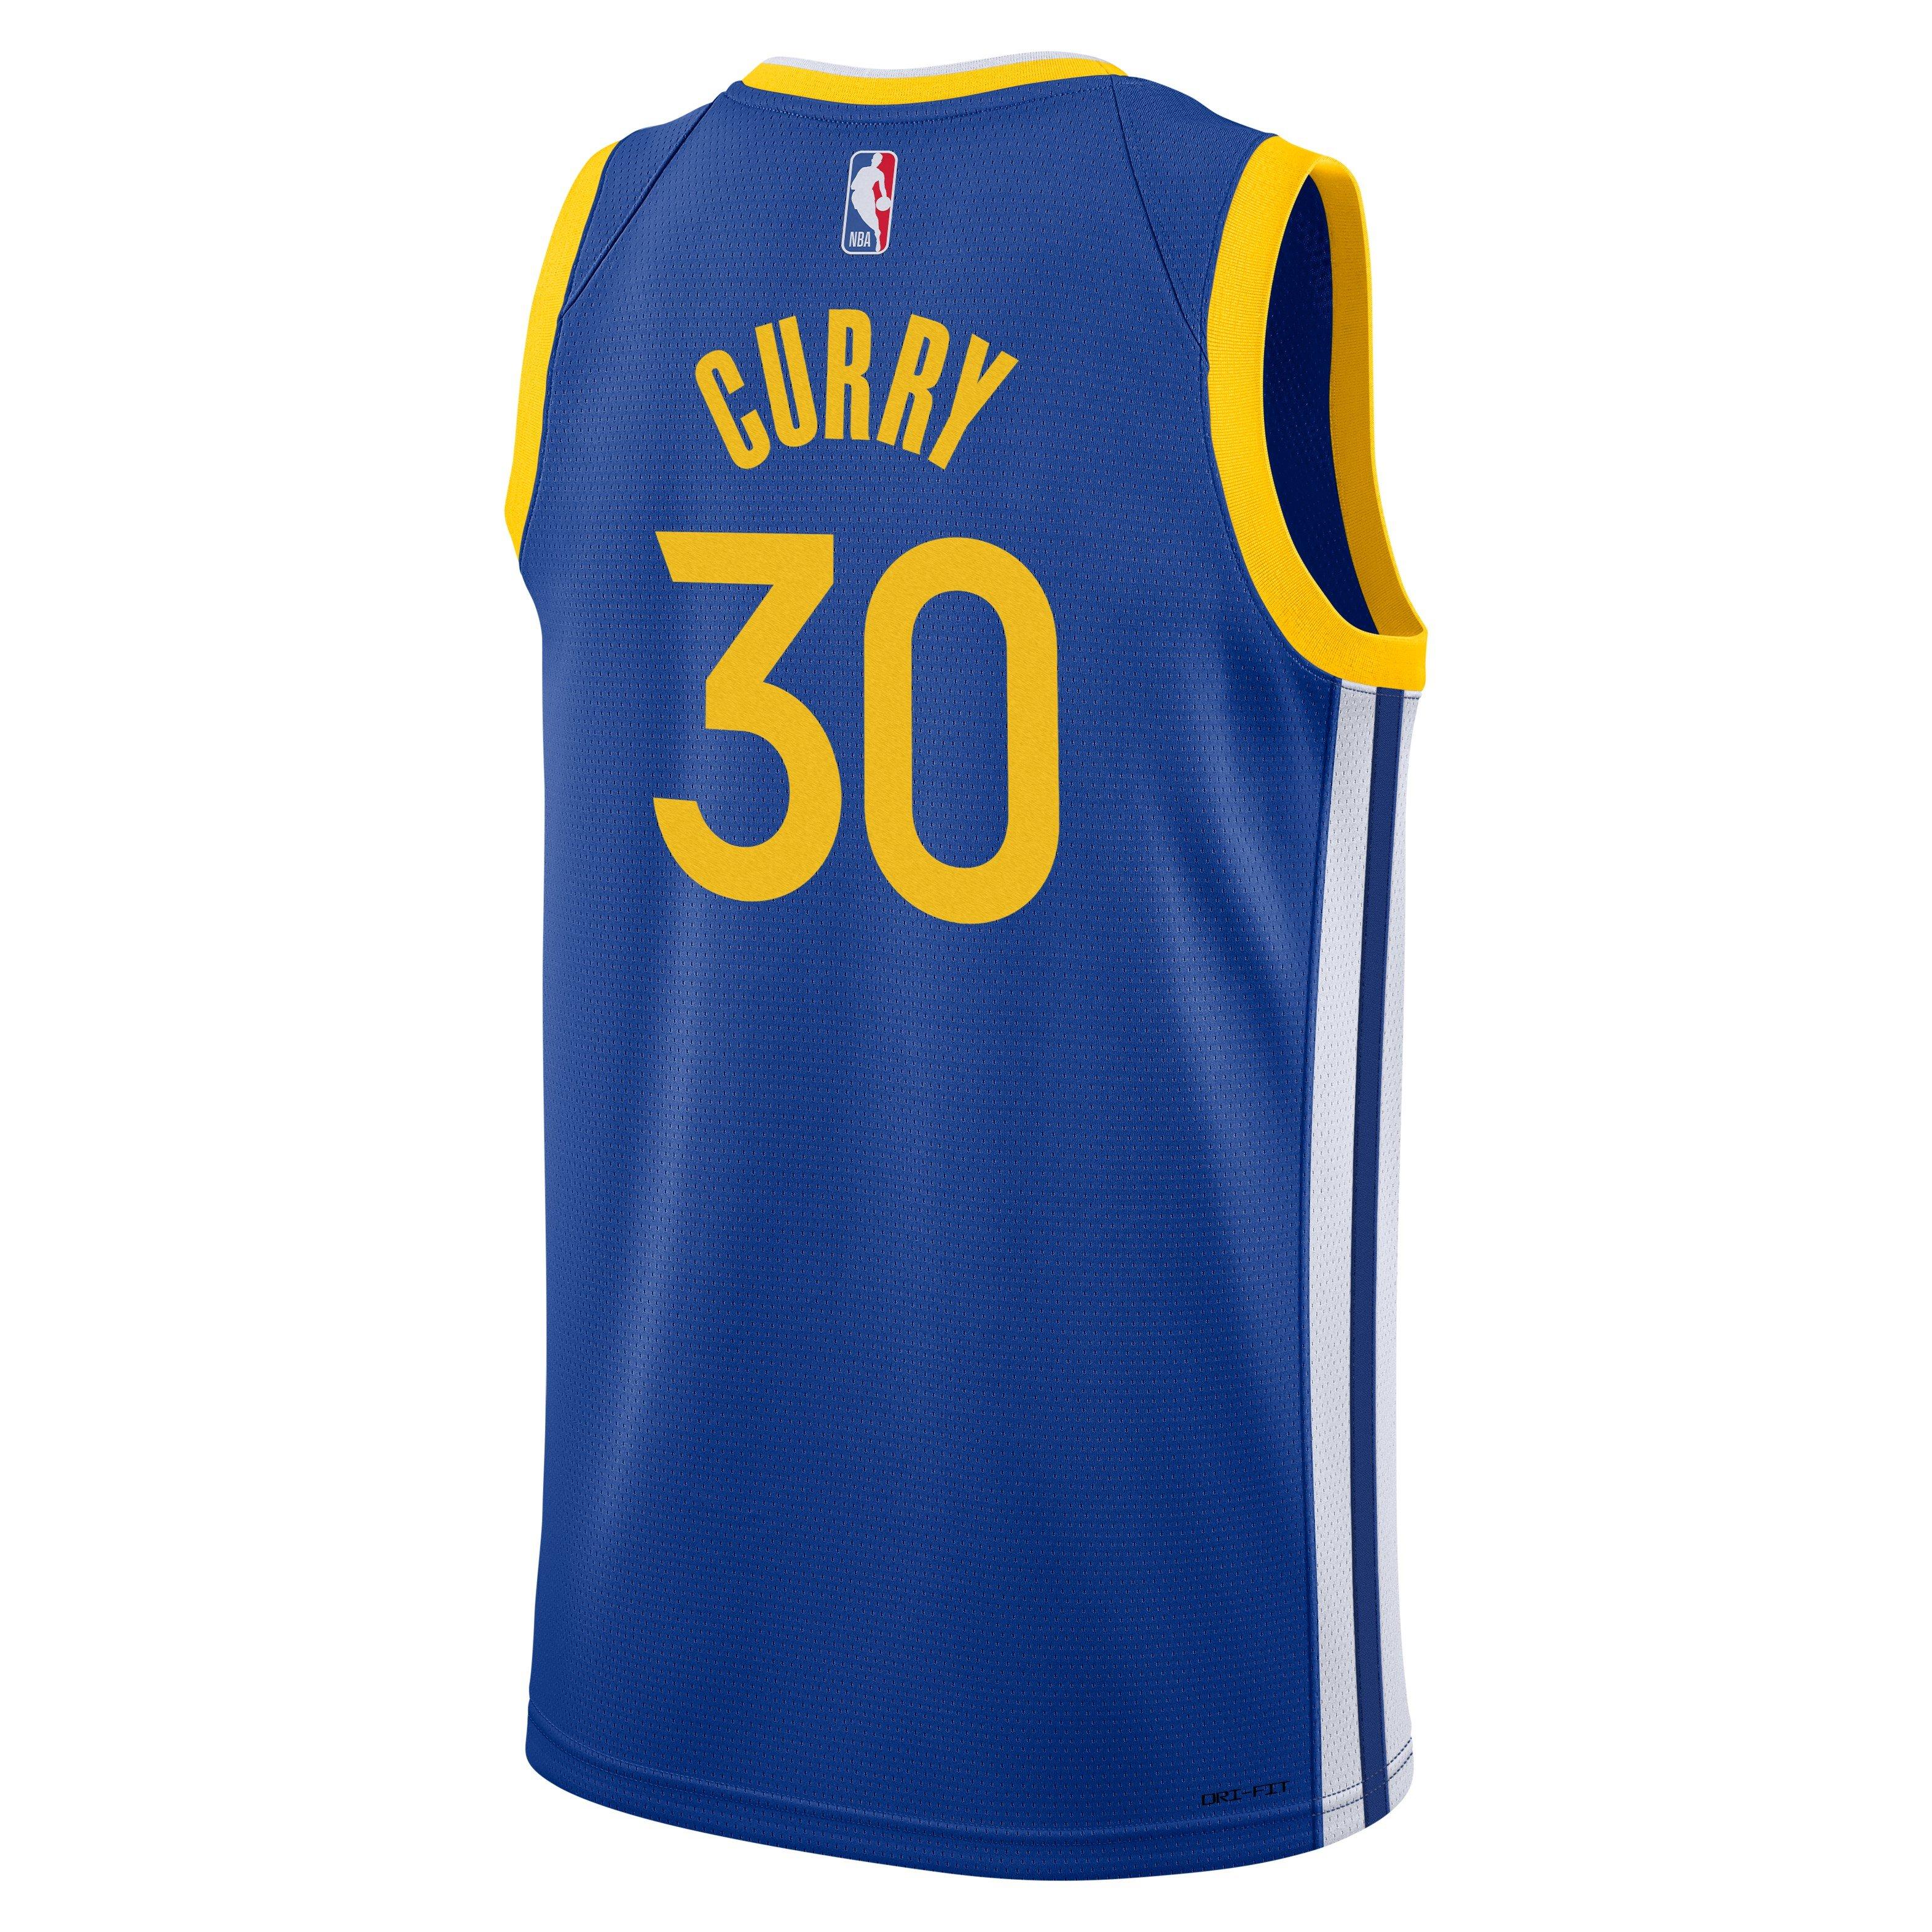 Stephen Curry Jerseys & Gear in NBA Fan Shop 